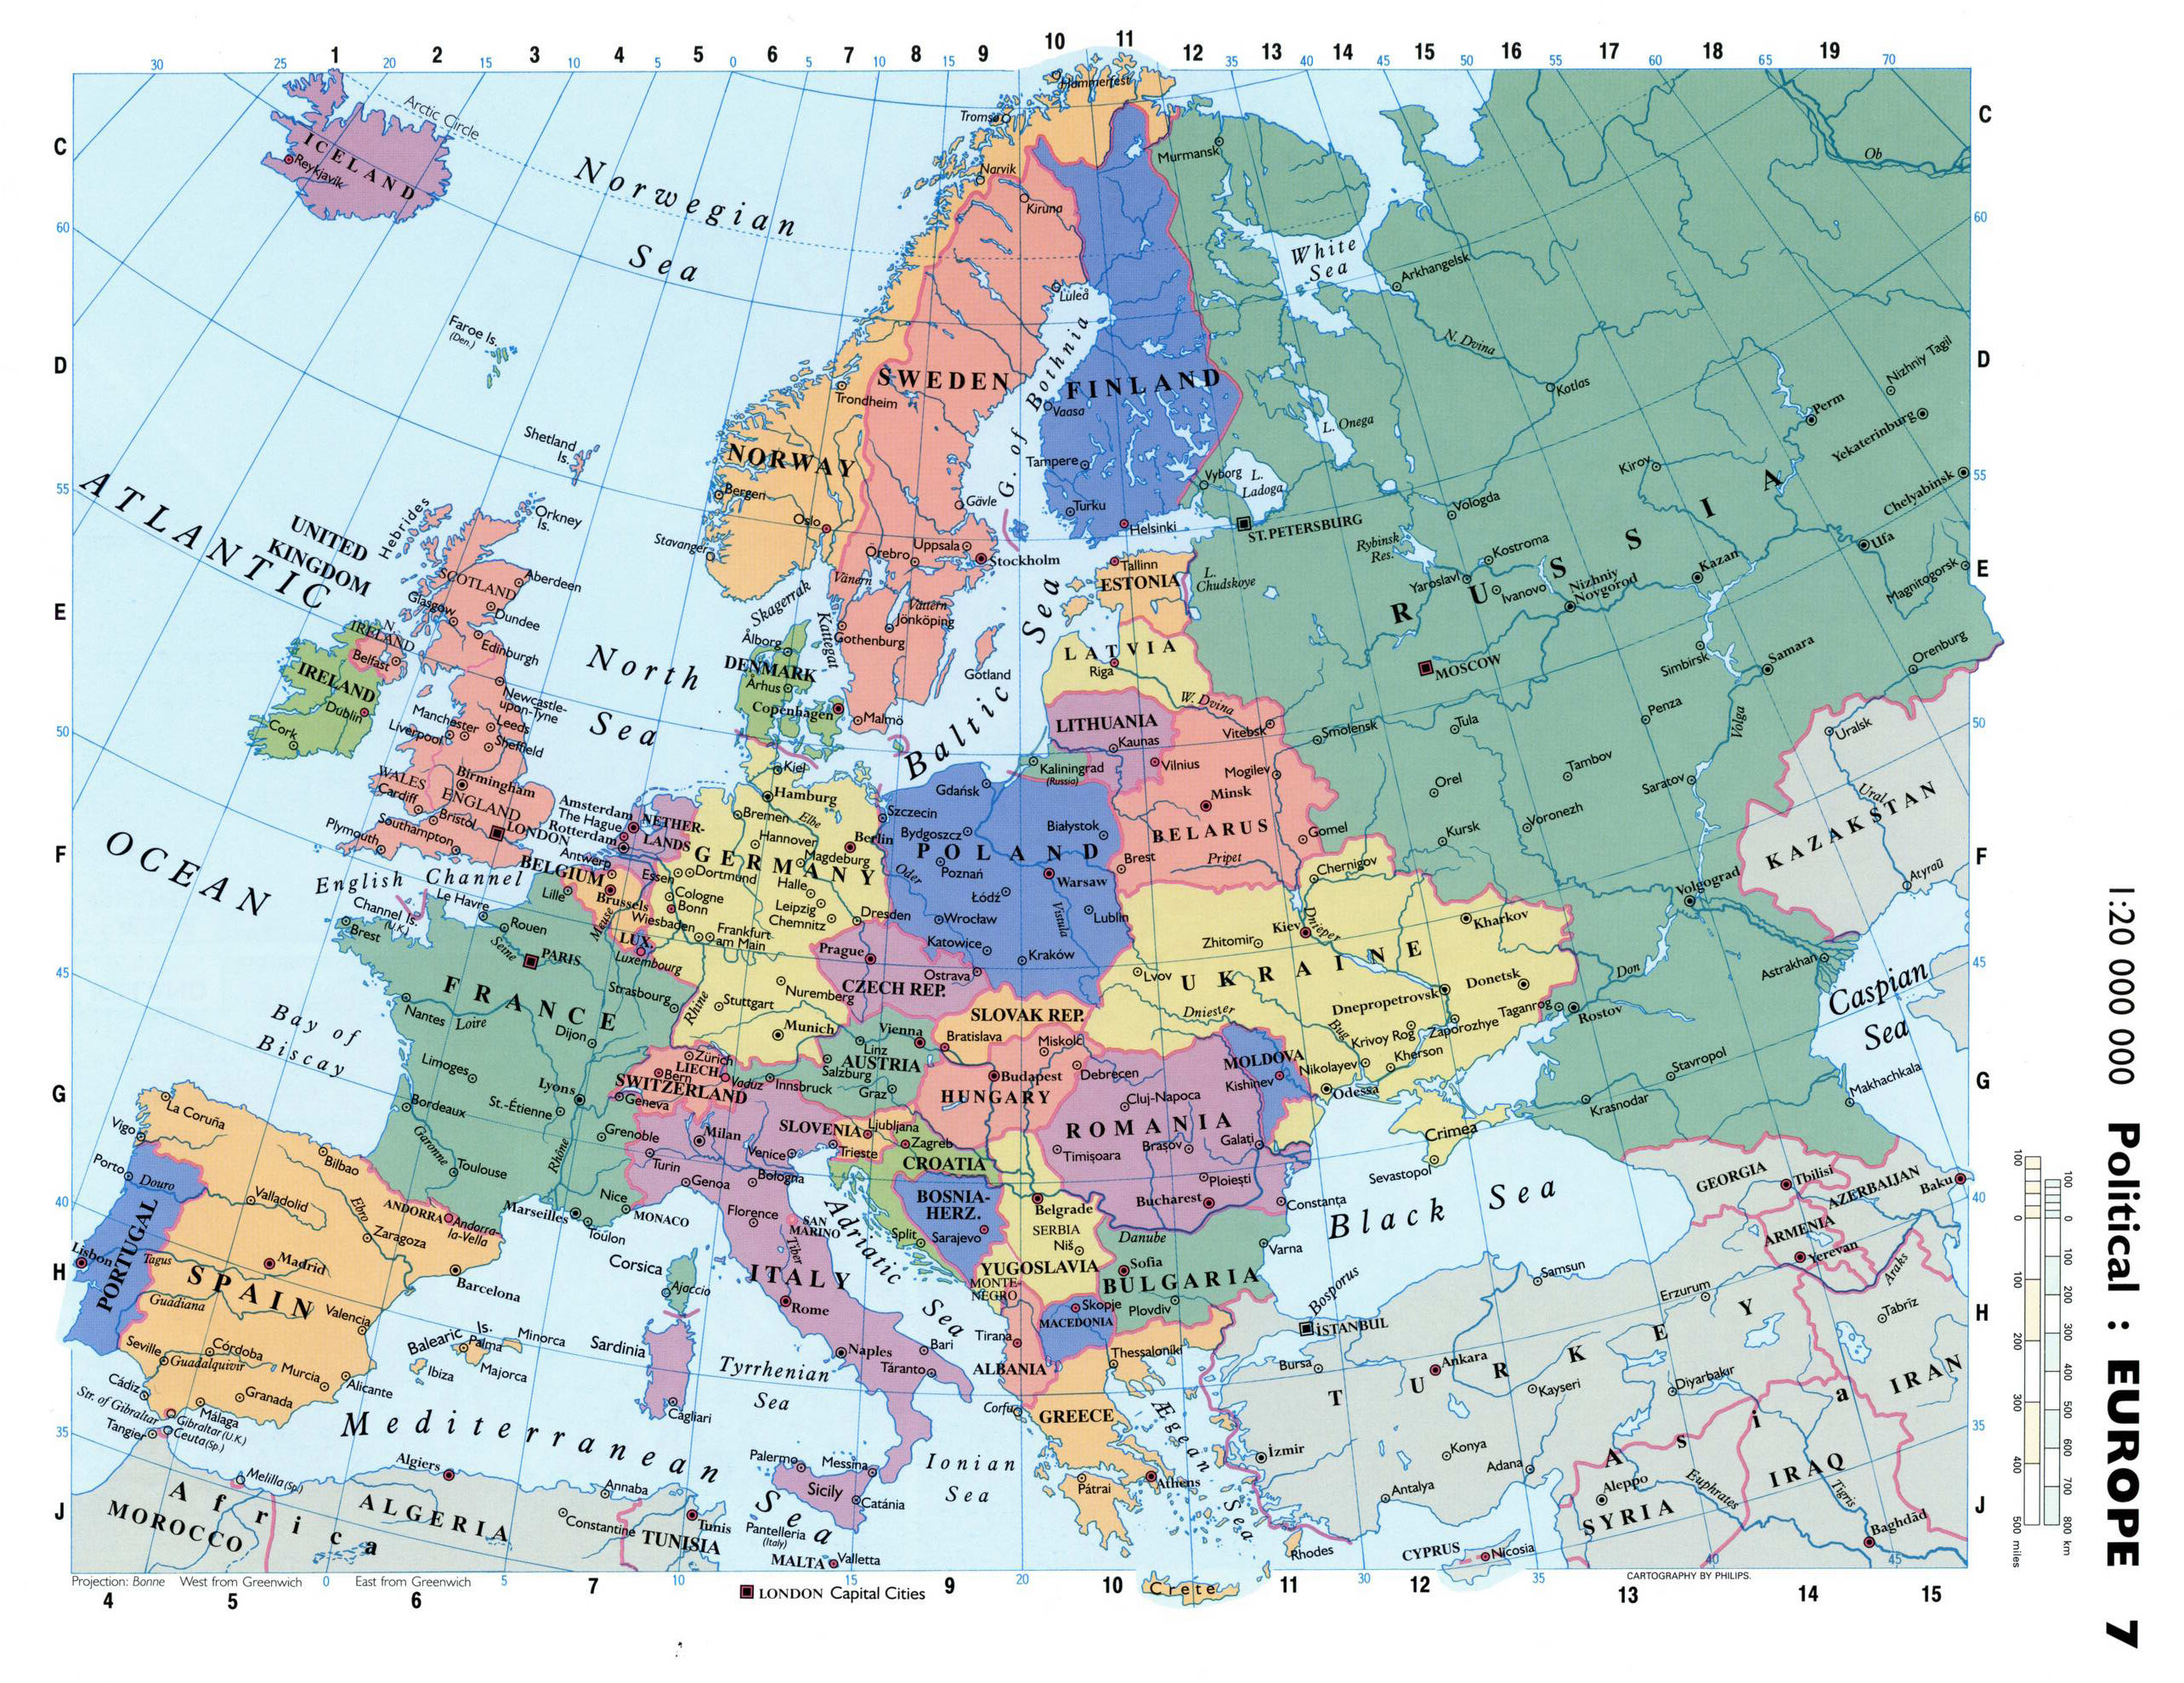 Mapa político detallado de Europa con las capitales y principales ciudades, Europa